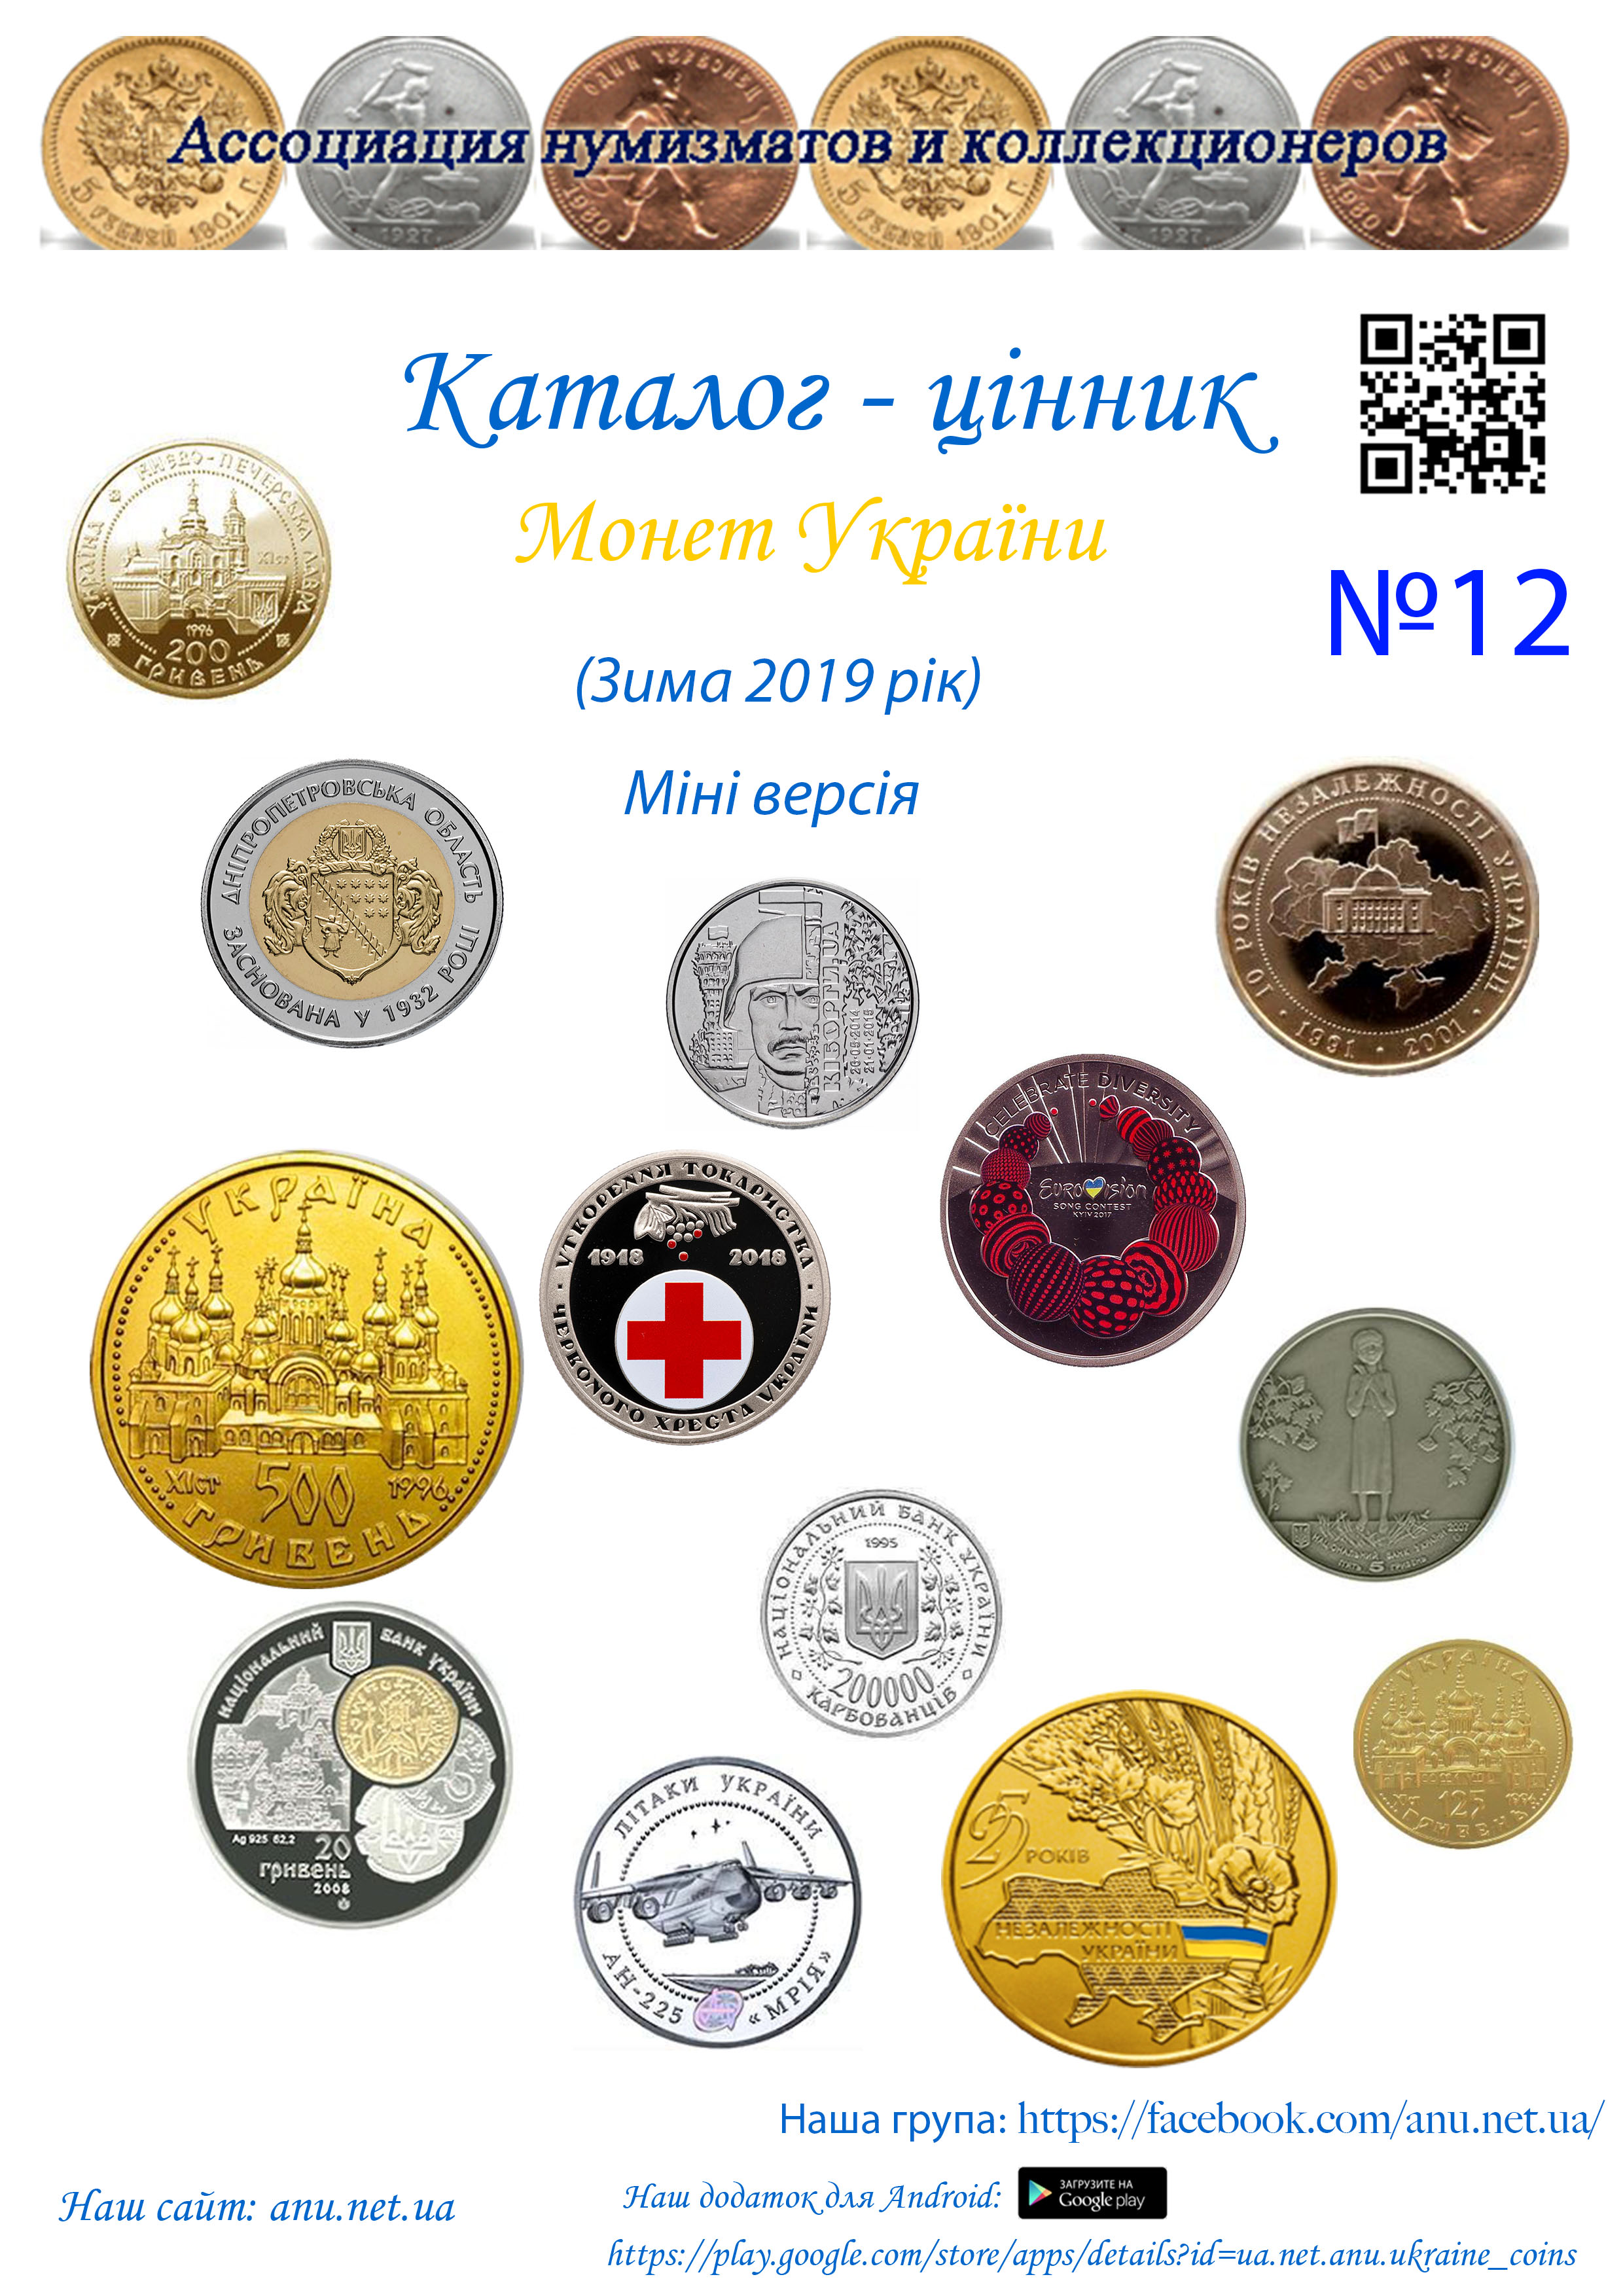 Version_12 Цены на монеты Украины